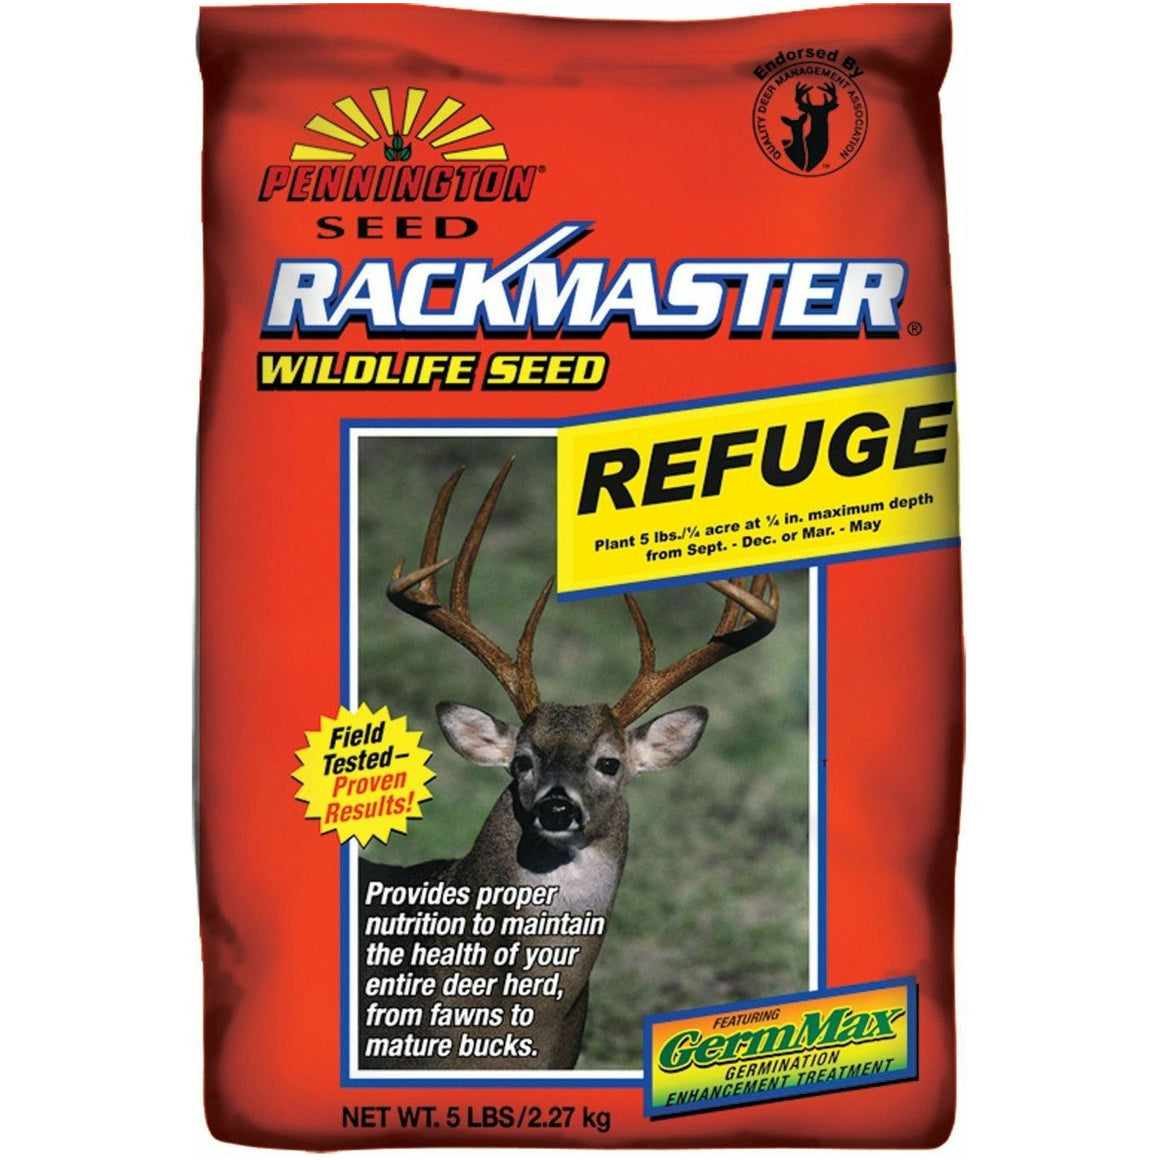 Rackmaster Refuge Food Plot Seed - 5 Lbs. - Seed World